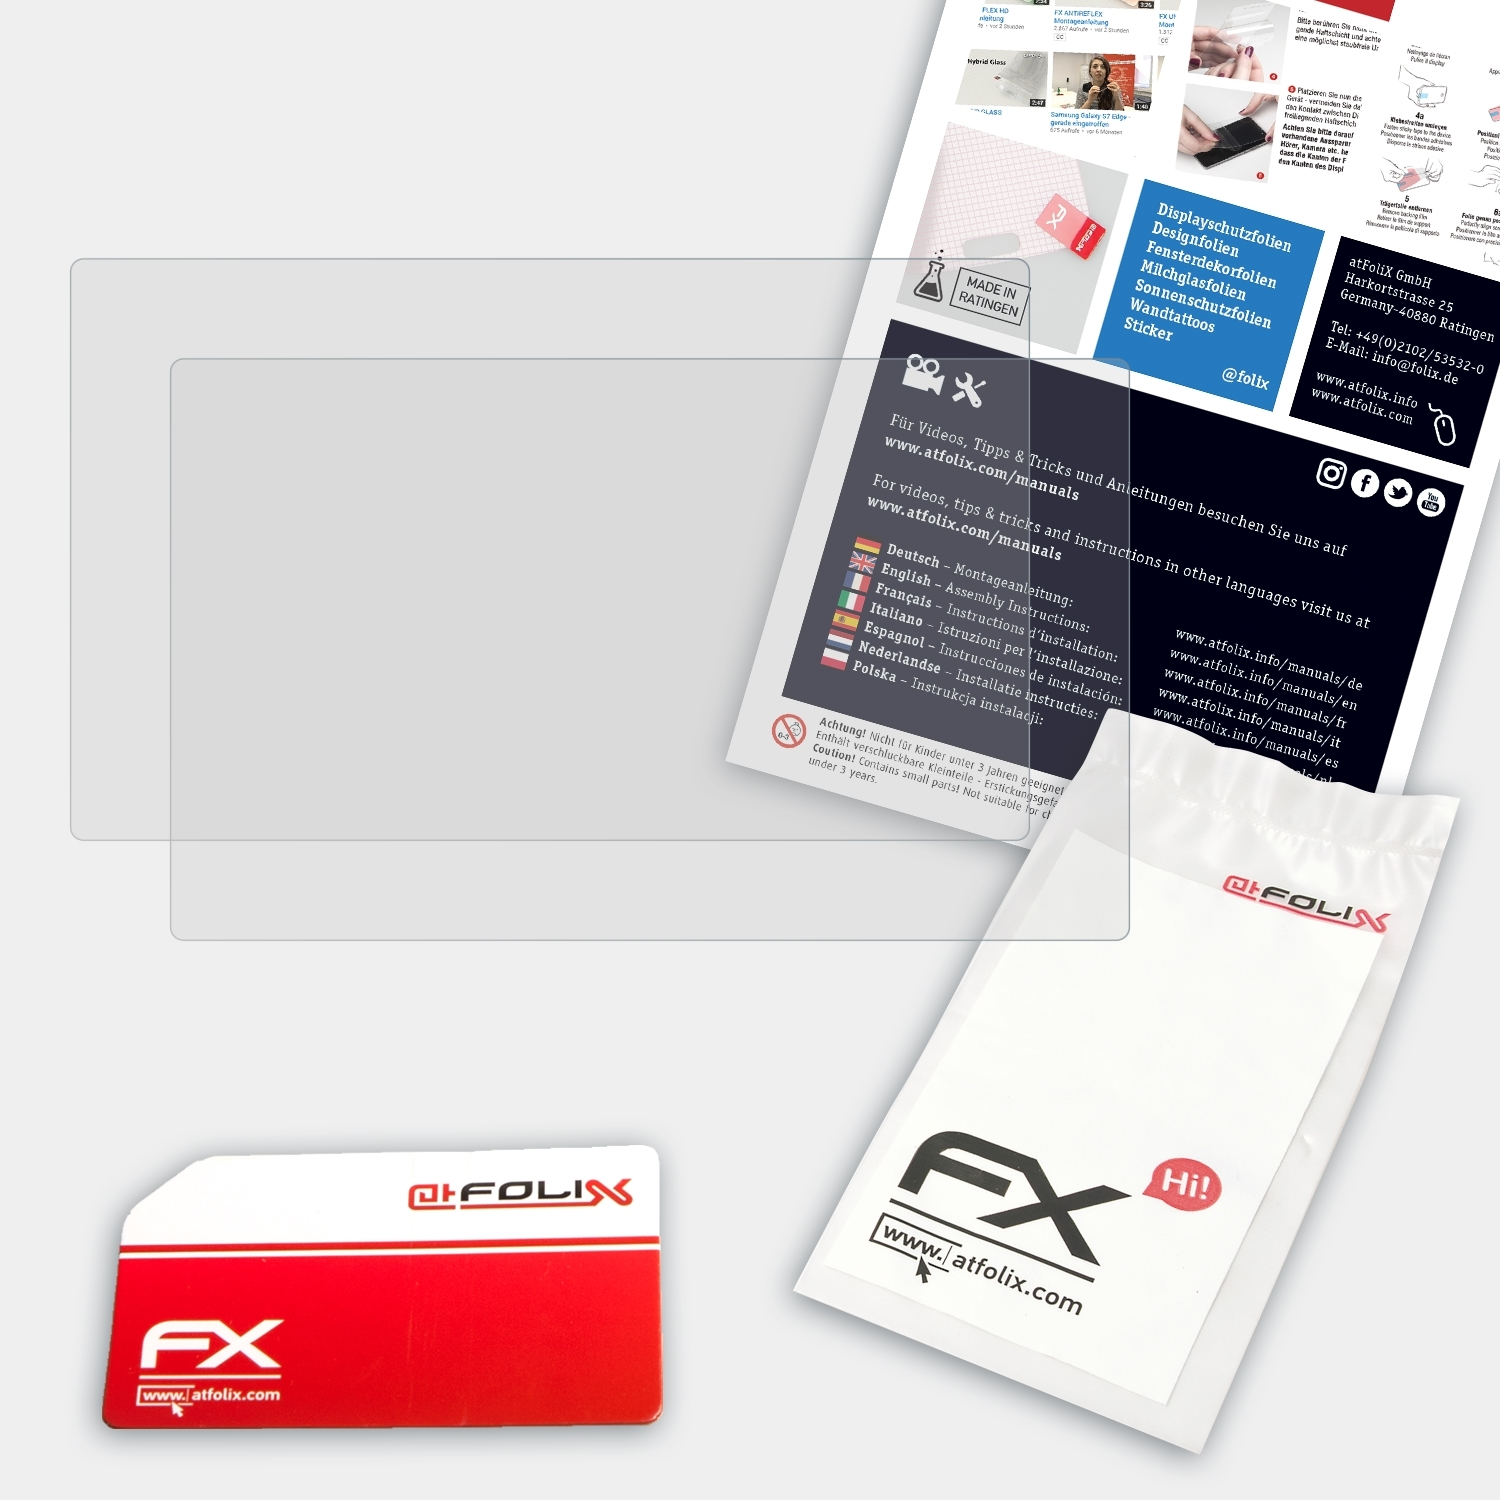 ATFOLIX 2x XP-PEN Artist Pro) Displayschutz(für 22R FX-Antireflex